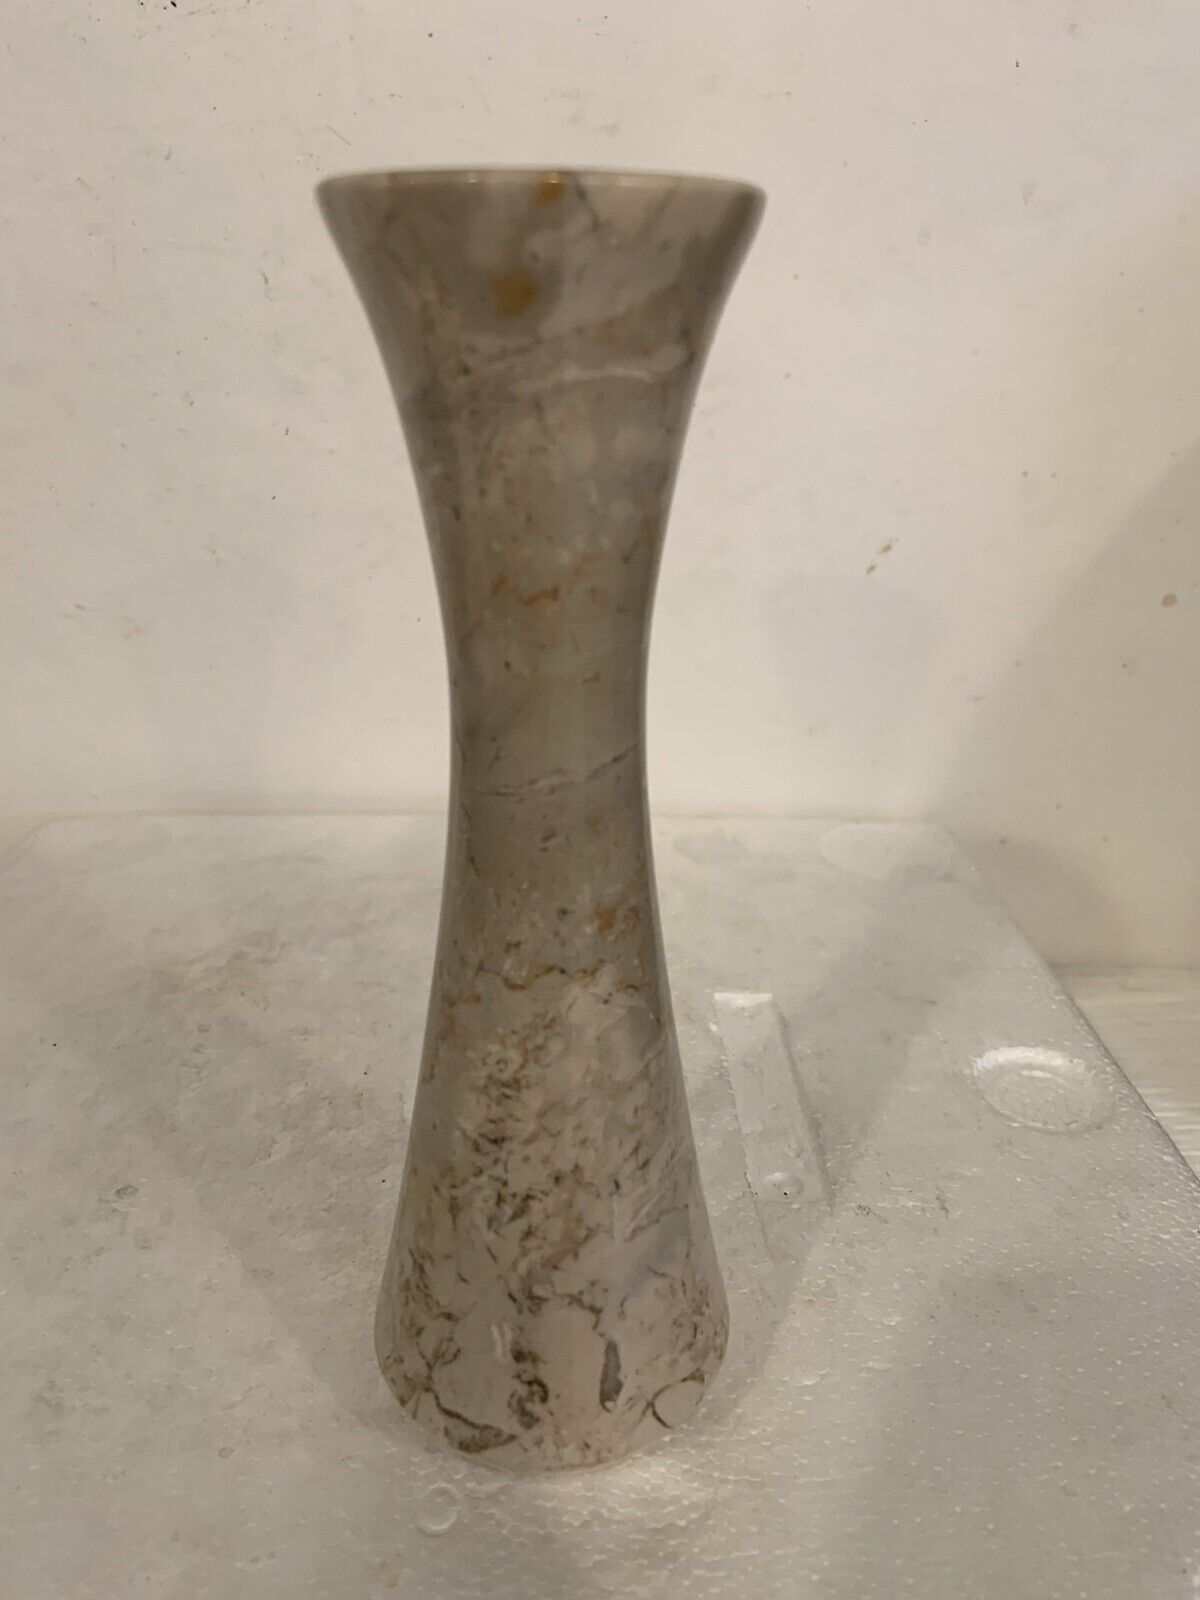 Vintage Marble Vase 7” Tall Tan Stem Vase Beautiful Marble RARE See All Photos